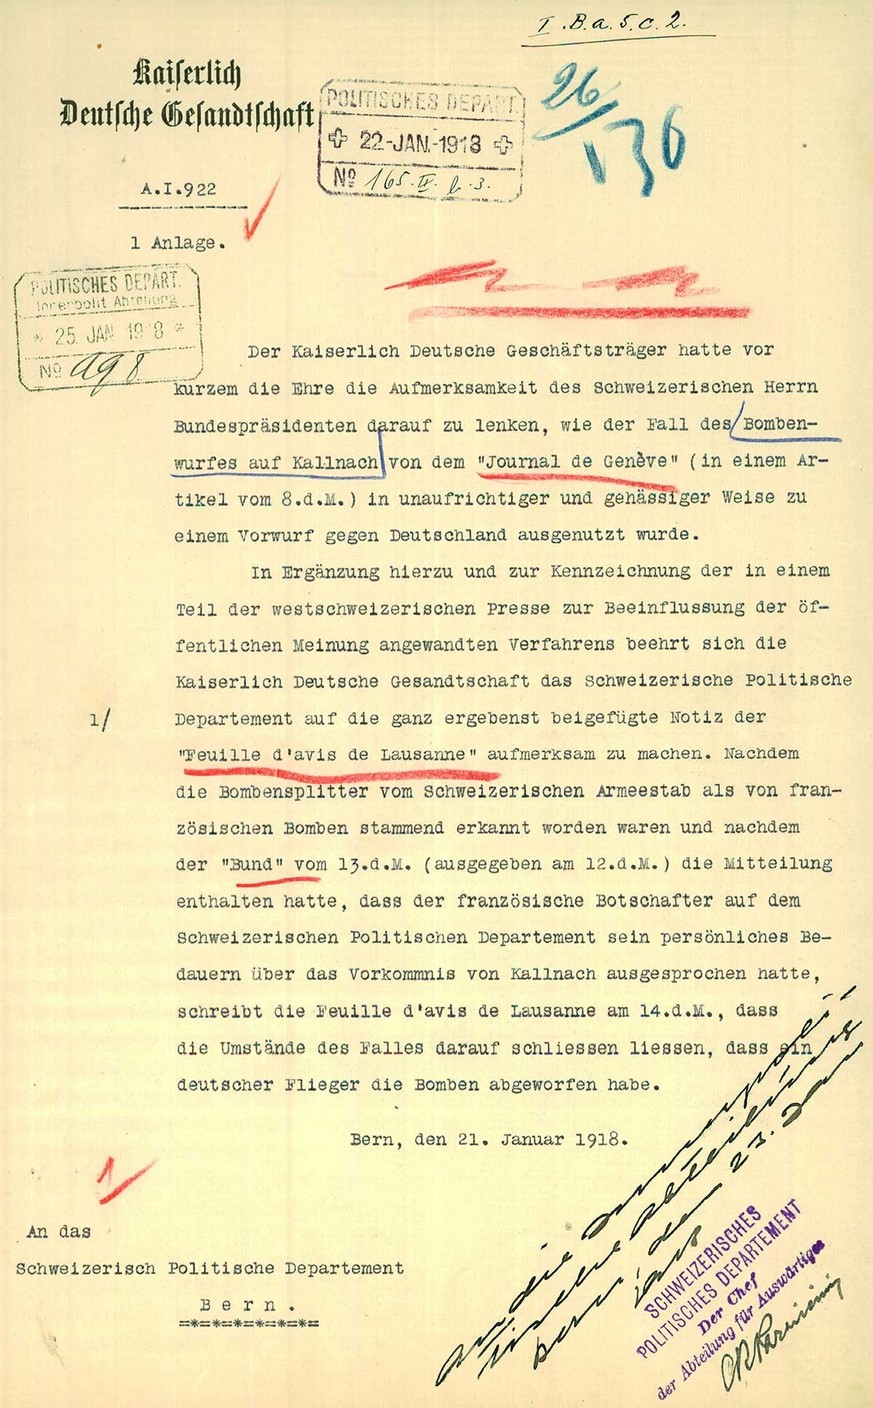 Note de protestation de la légation impériale allemande adressée au Département politique fédéral, janvier 1918.
https://www.recherche.bar.admin.ch/recherche/#/fr/archive/unite/1624970